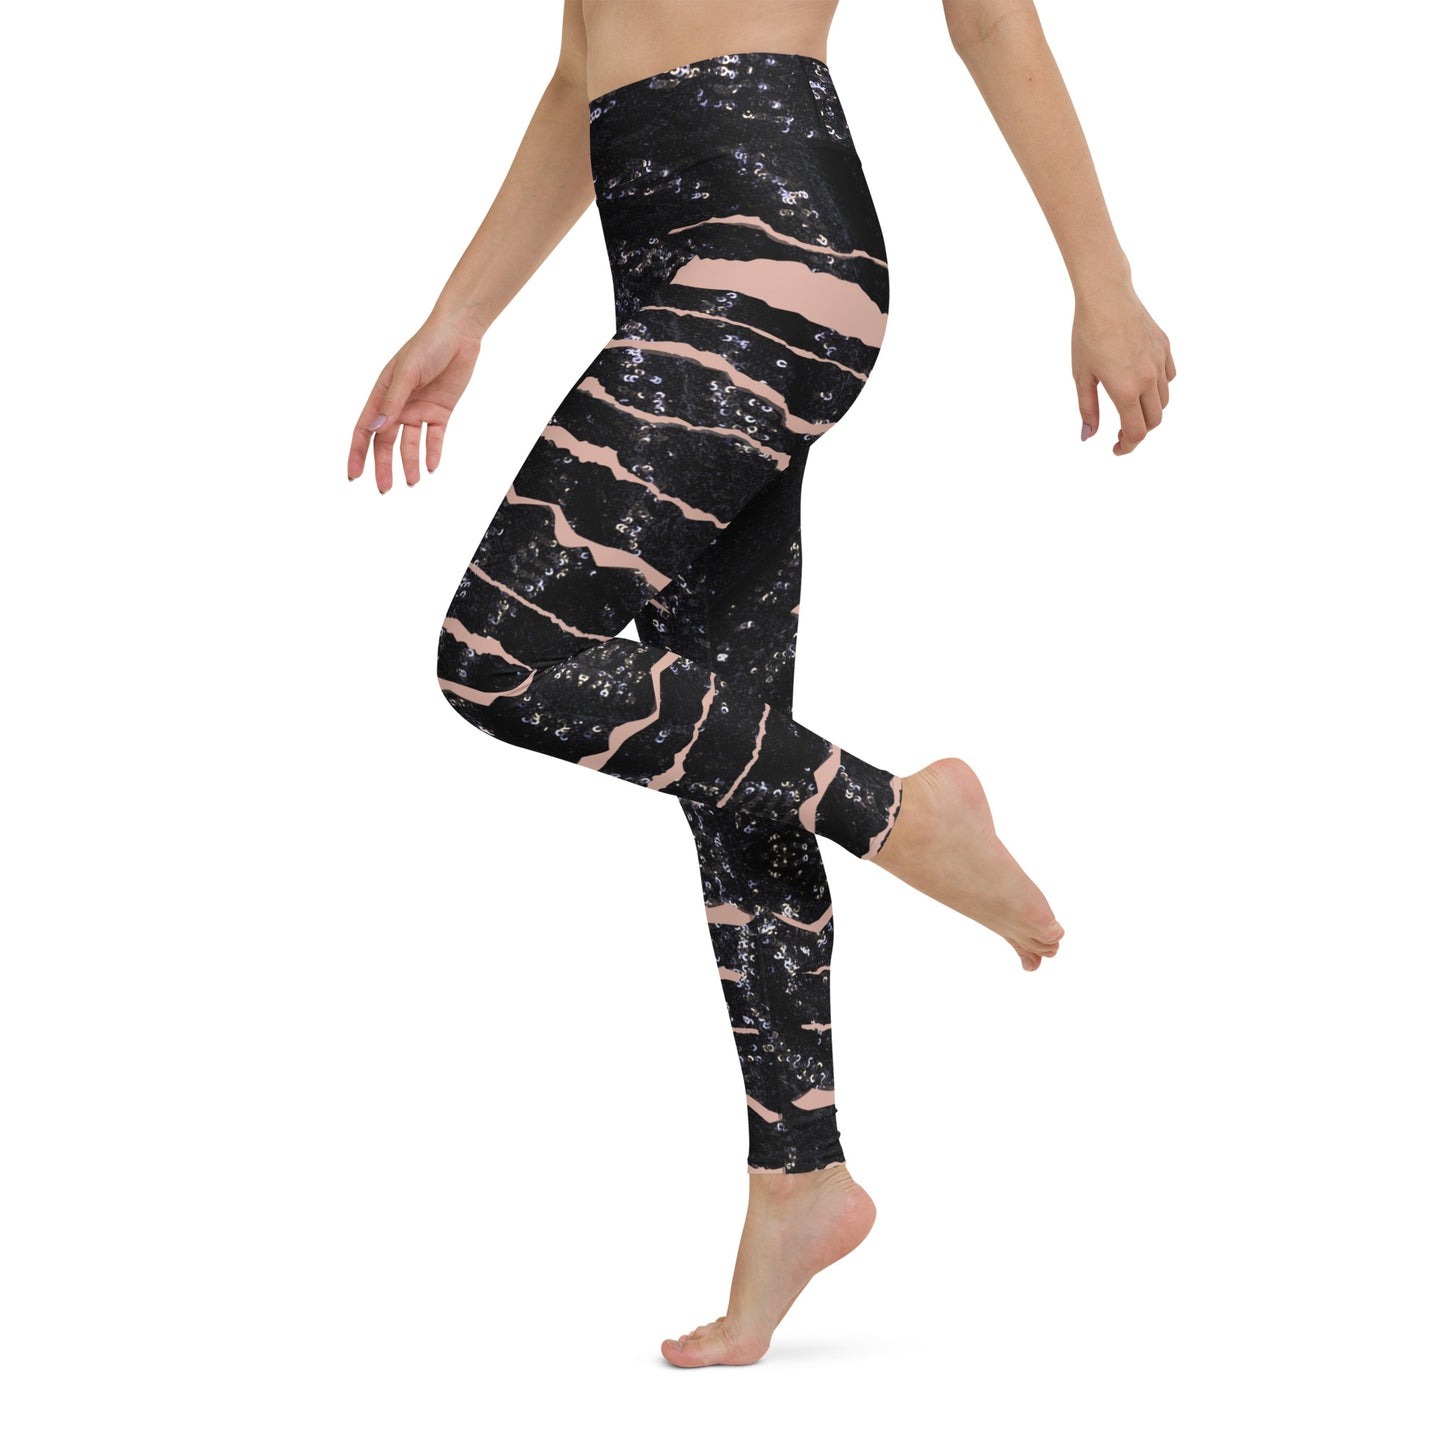 Shimmering Slits Yoga Leggings - Any Occasion Leggings, Date night leggings, rave leggings, Goth leggings